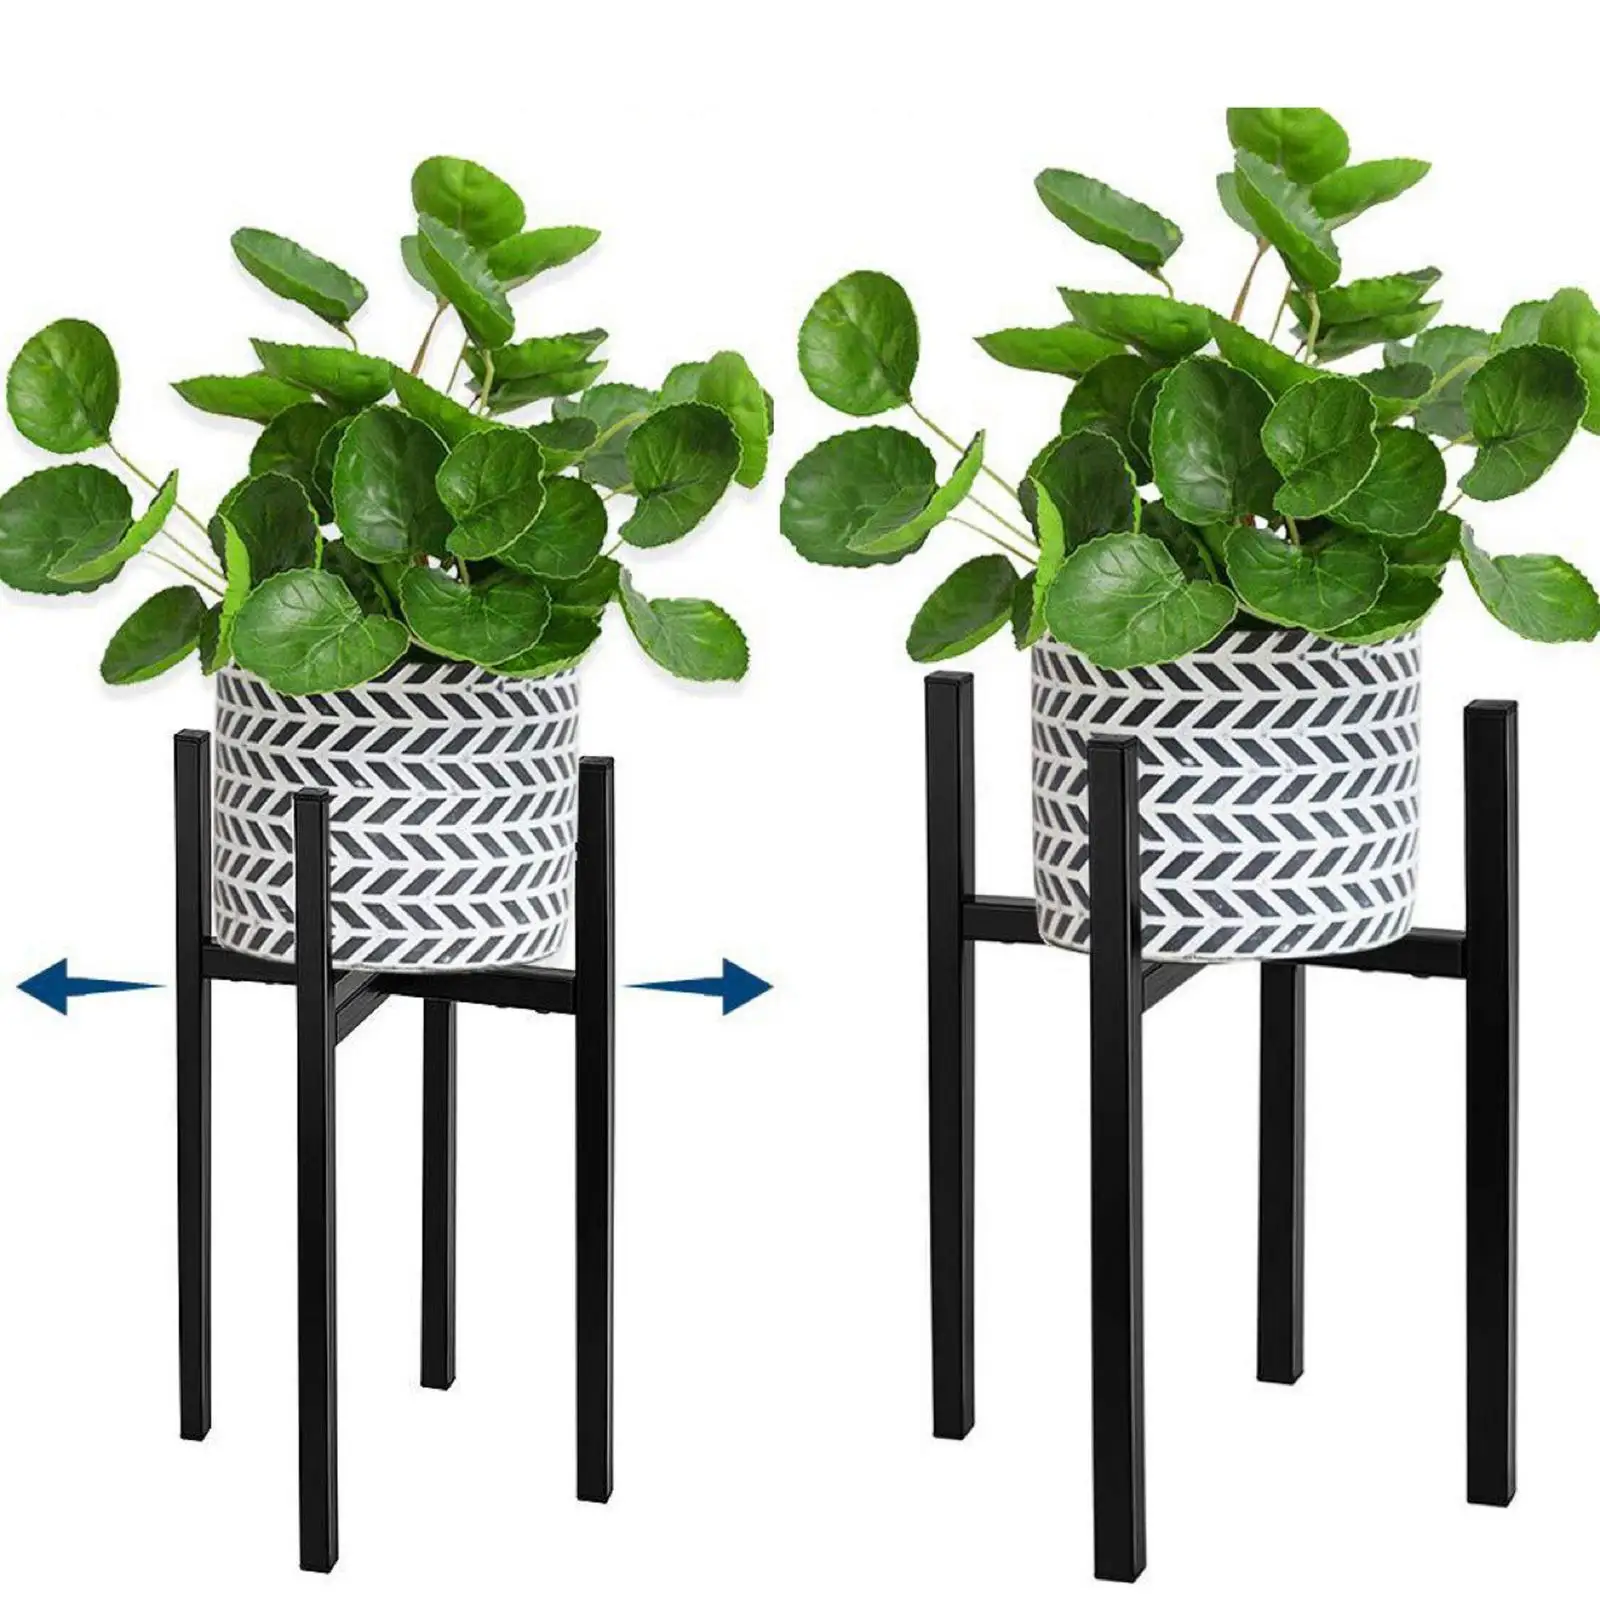 Adjustable Plant Stand, Adjustable Flower Pot Planter Display Rack Garden Room Decorative Plants Bracket